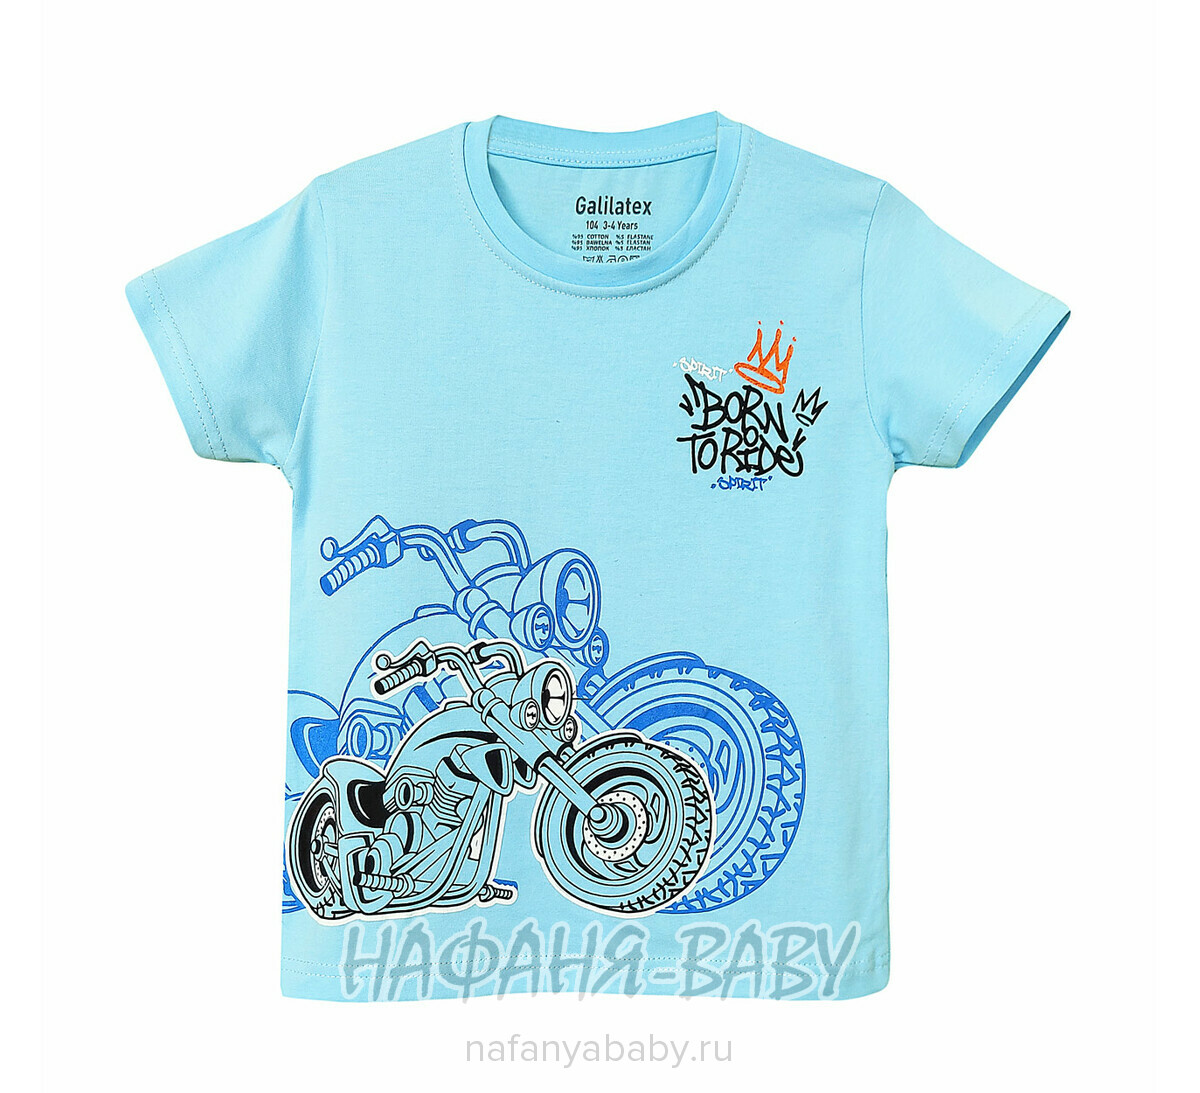 Детская футболка Galilatex арт. 8186, 4-8 лет, цвет голубой, оптом Турция